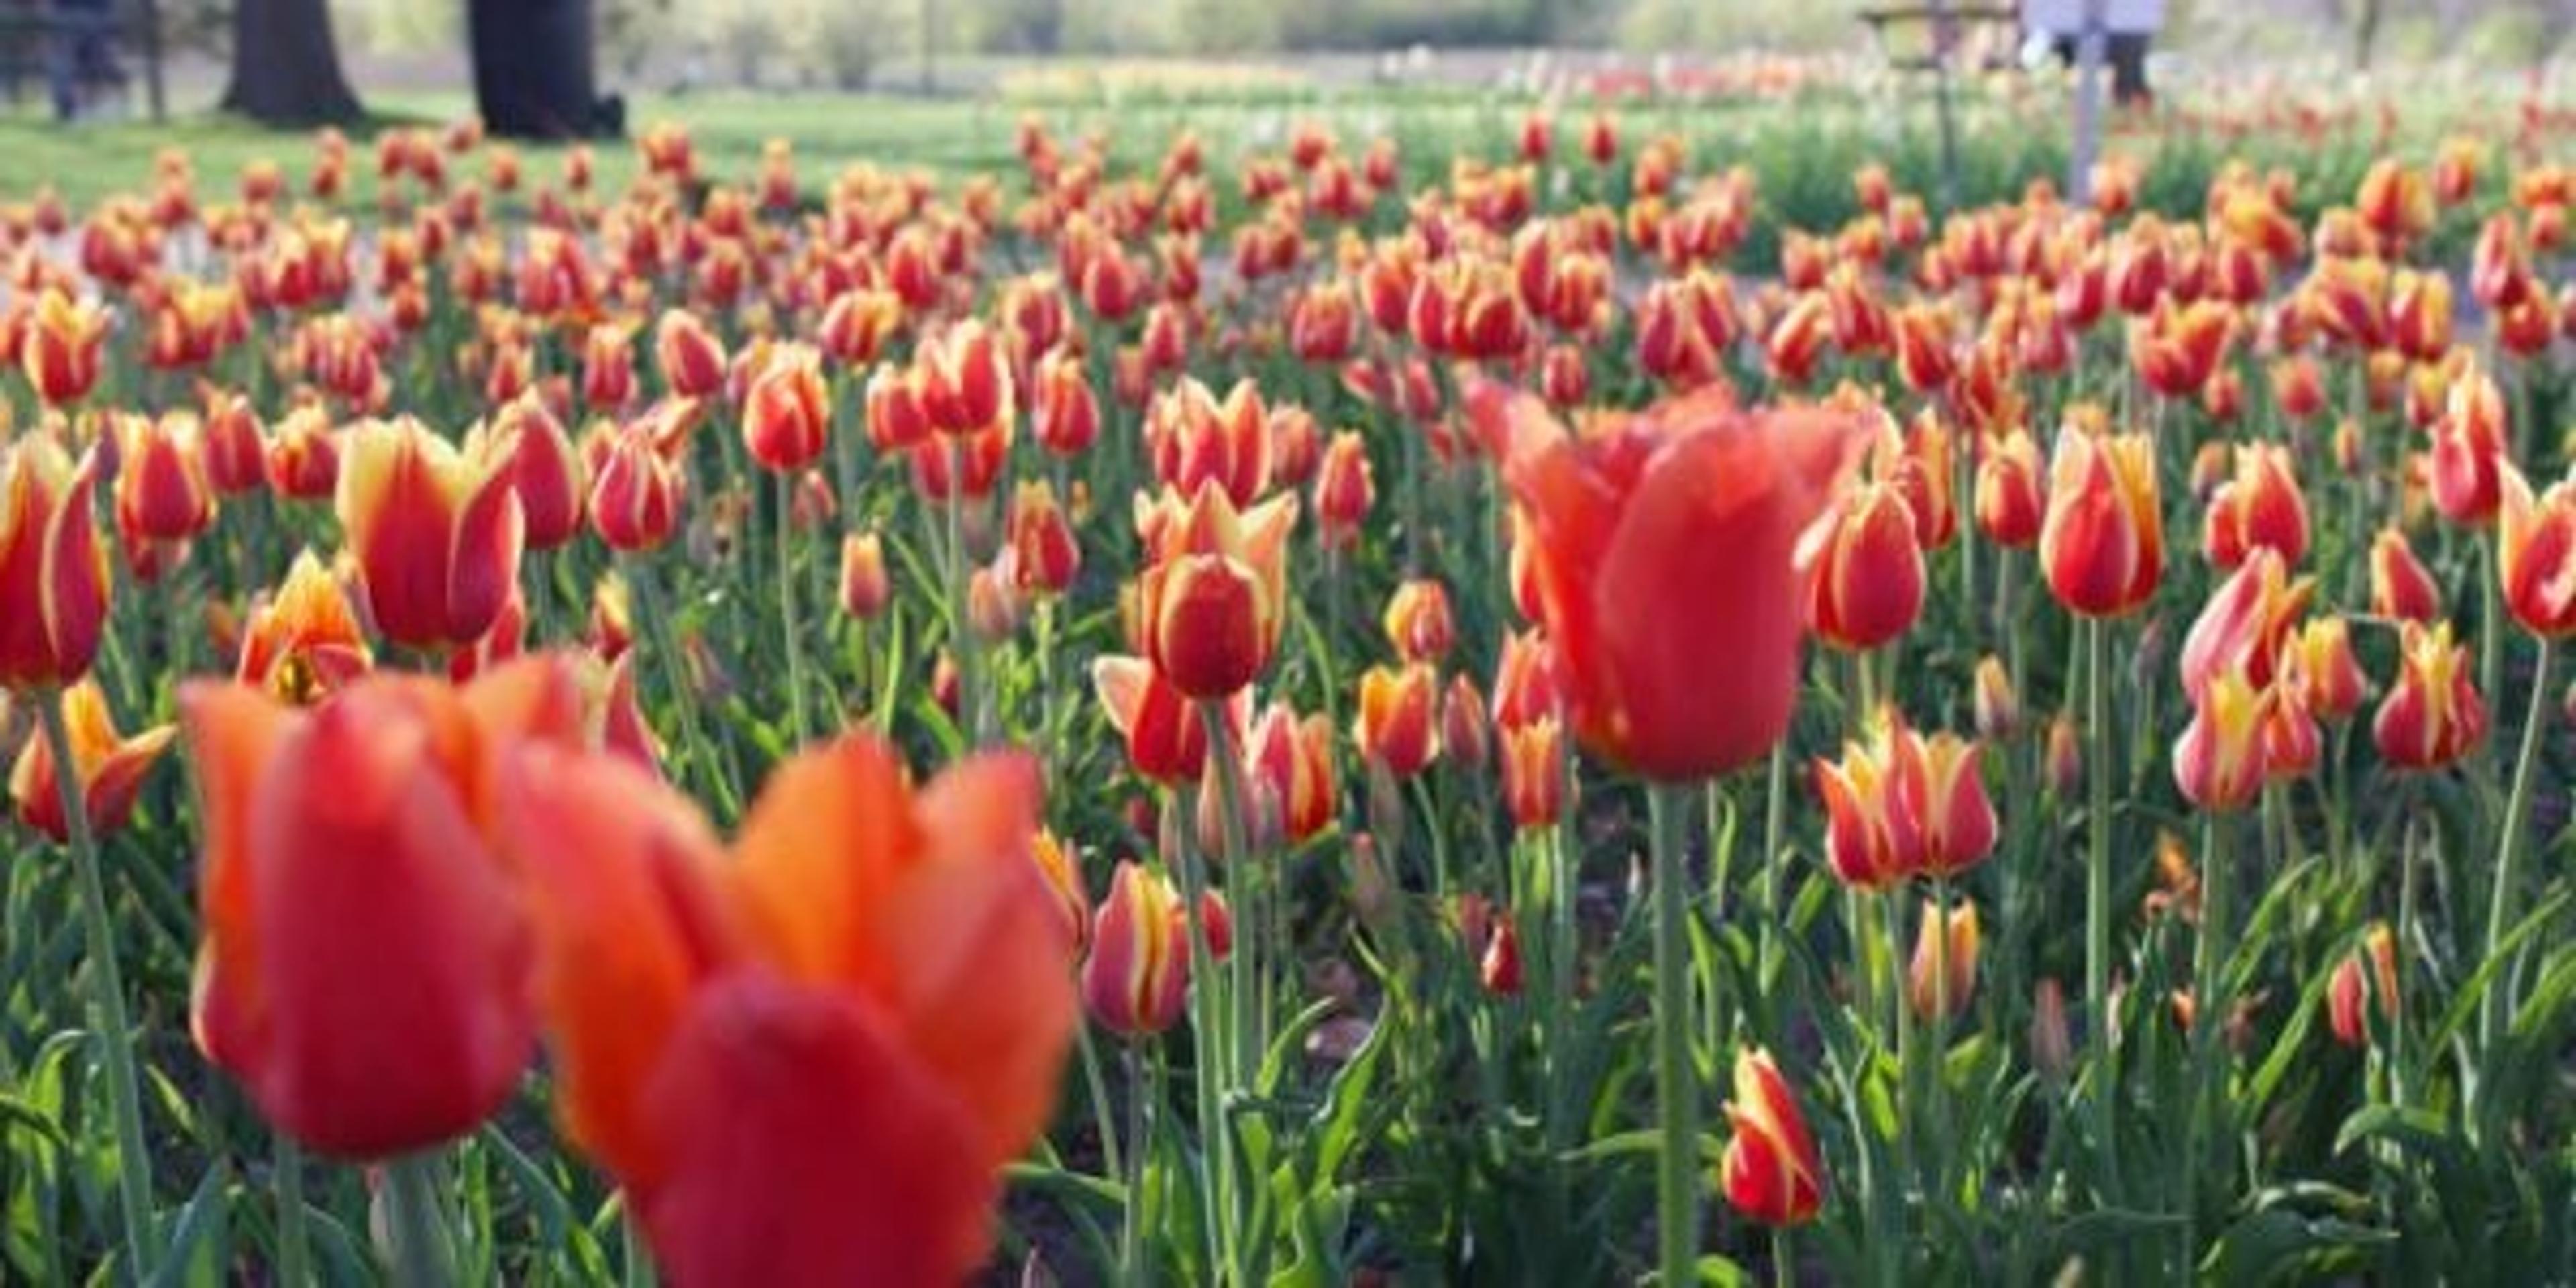 Peach tulips in field